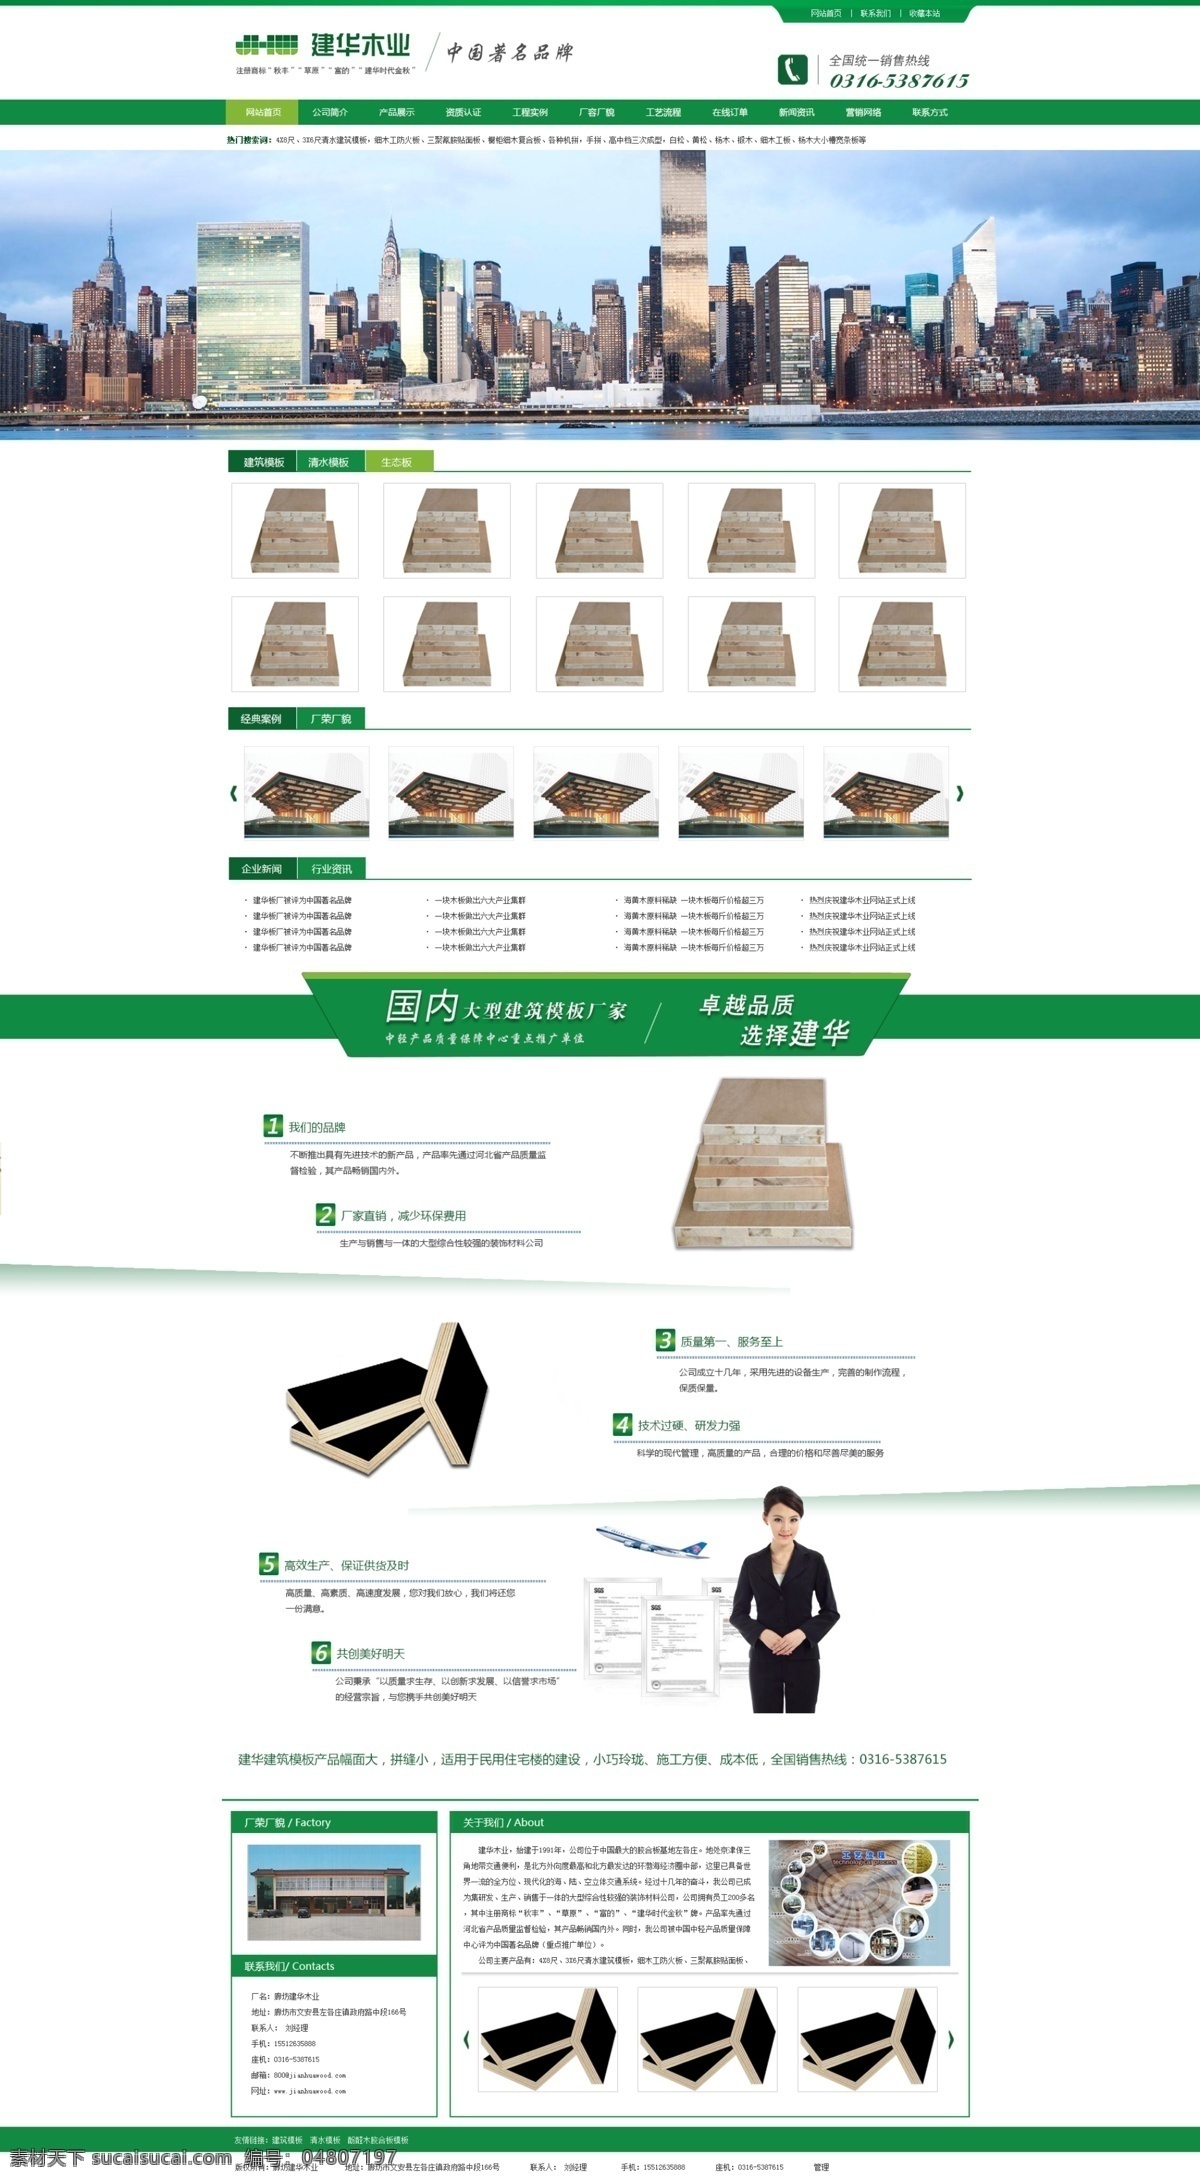 绿色 大气 木业 网站 模板 分层 简洁 简洁大气 网页设计元素 网页素材 网站模板 原创设计 原创网页设计